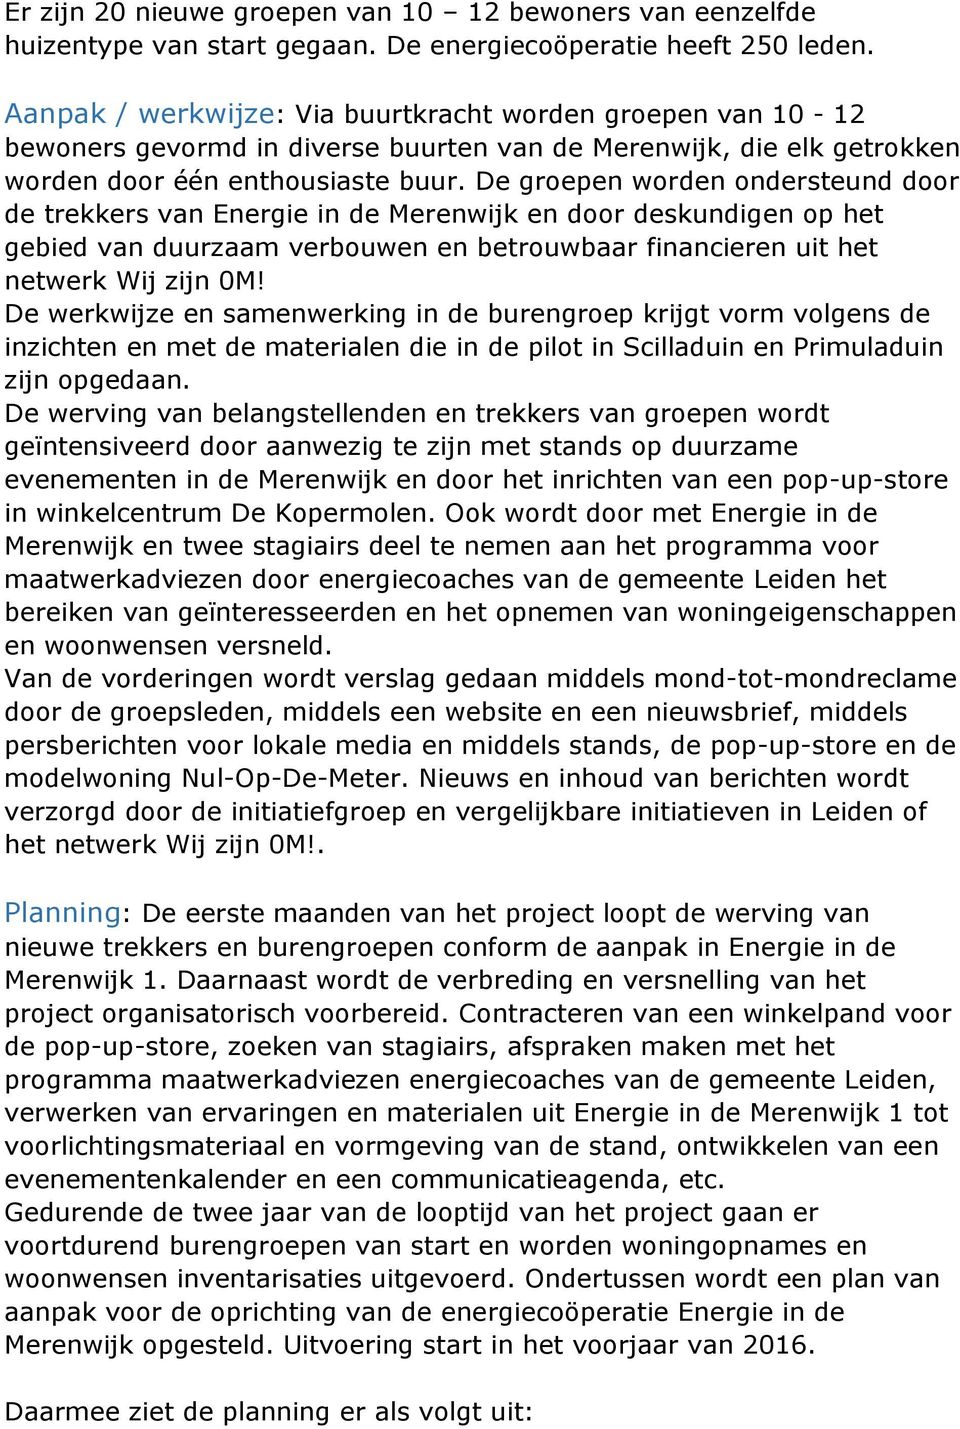 De groepen worden ondersteund door de trekkers van Energie in de Merenwijk en door deskundigen op het gebied van duurzaam verbouwen en betrouwbaar financieren uit het netwerk Wij zijn 0M!